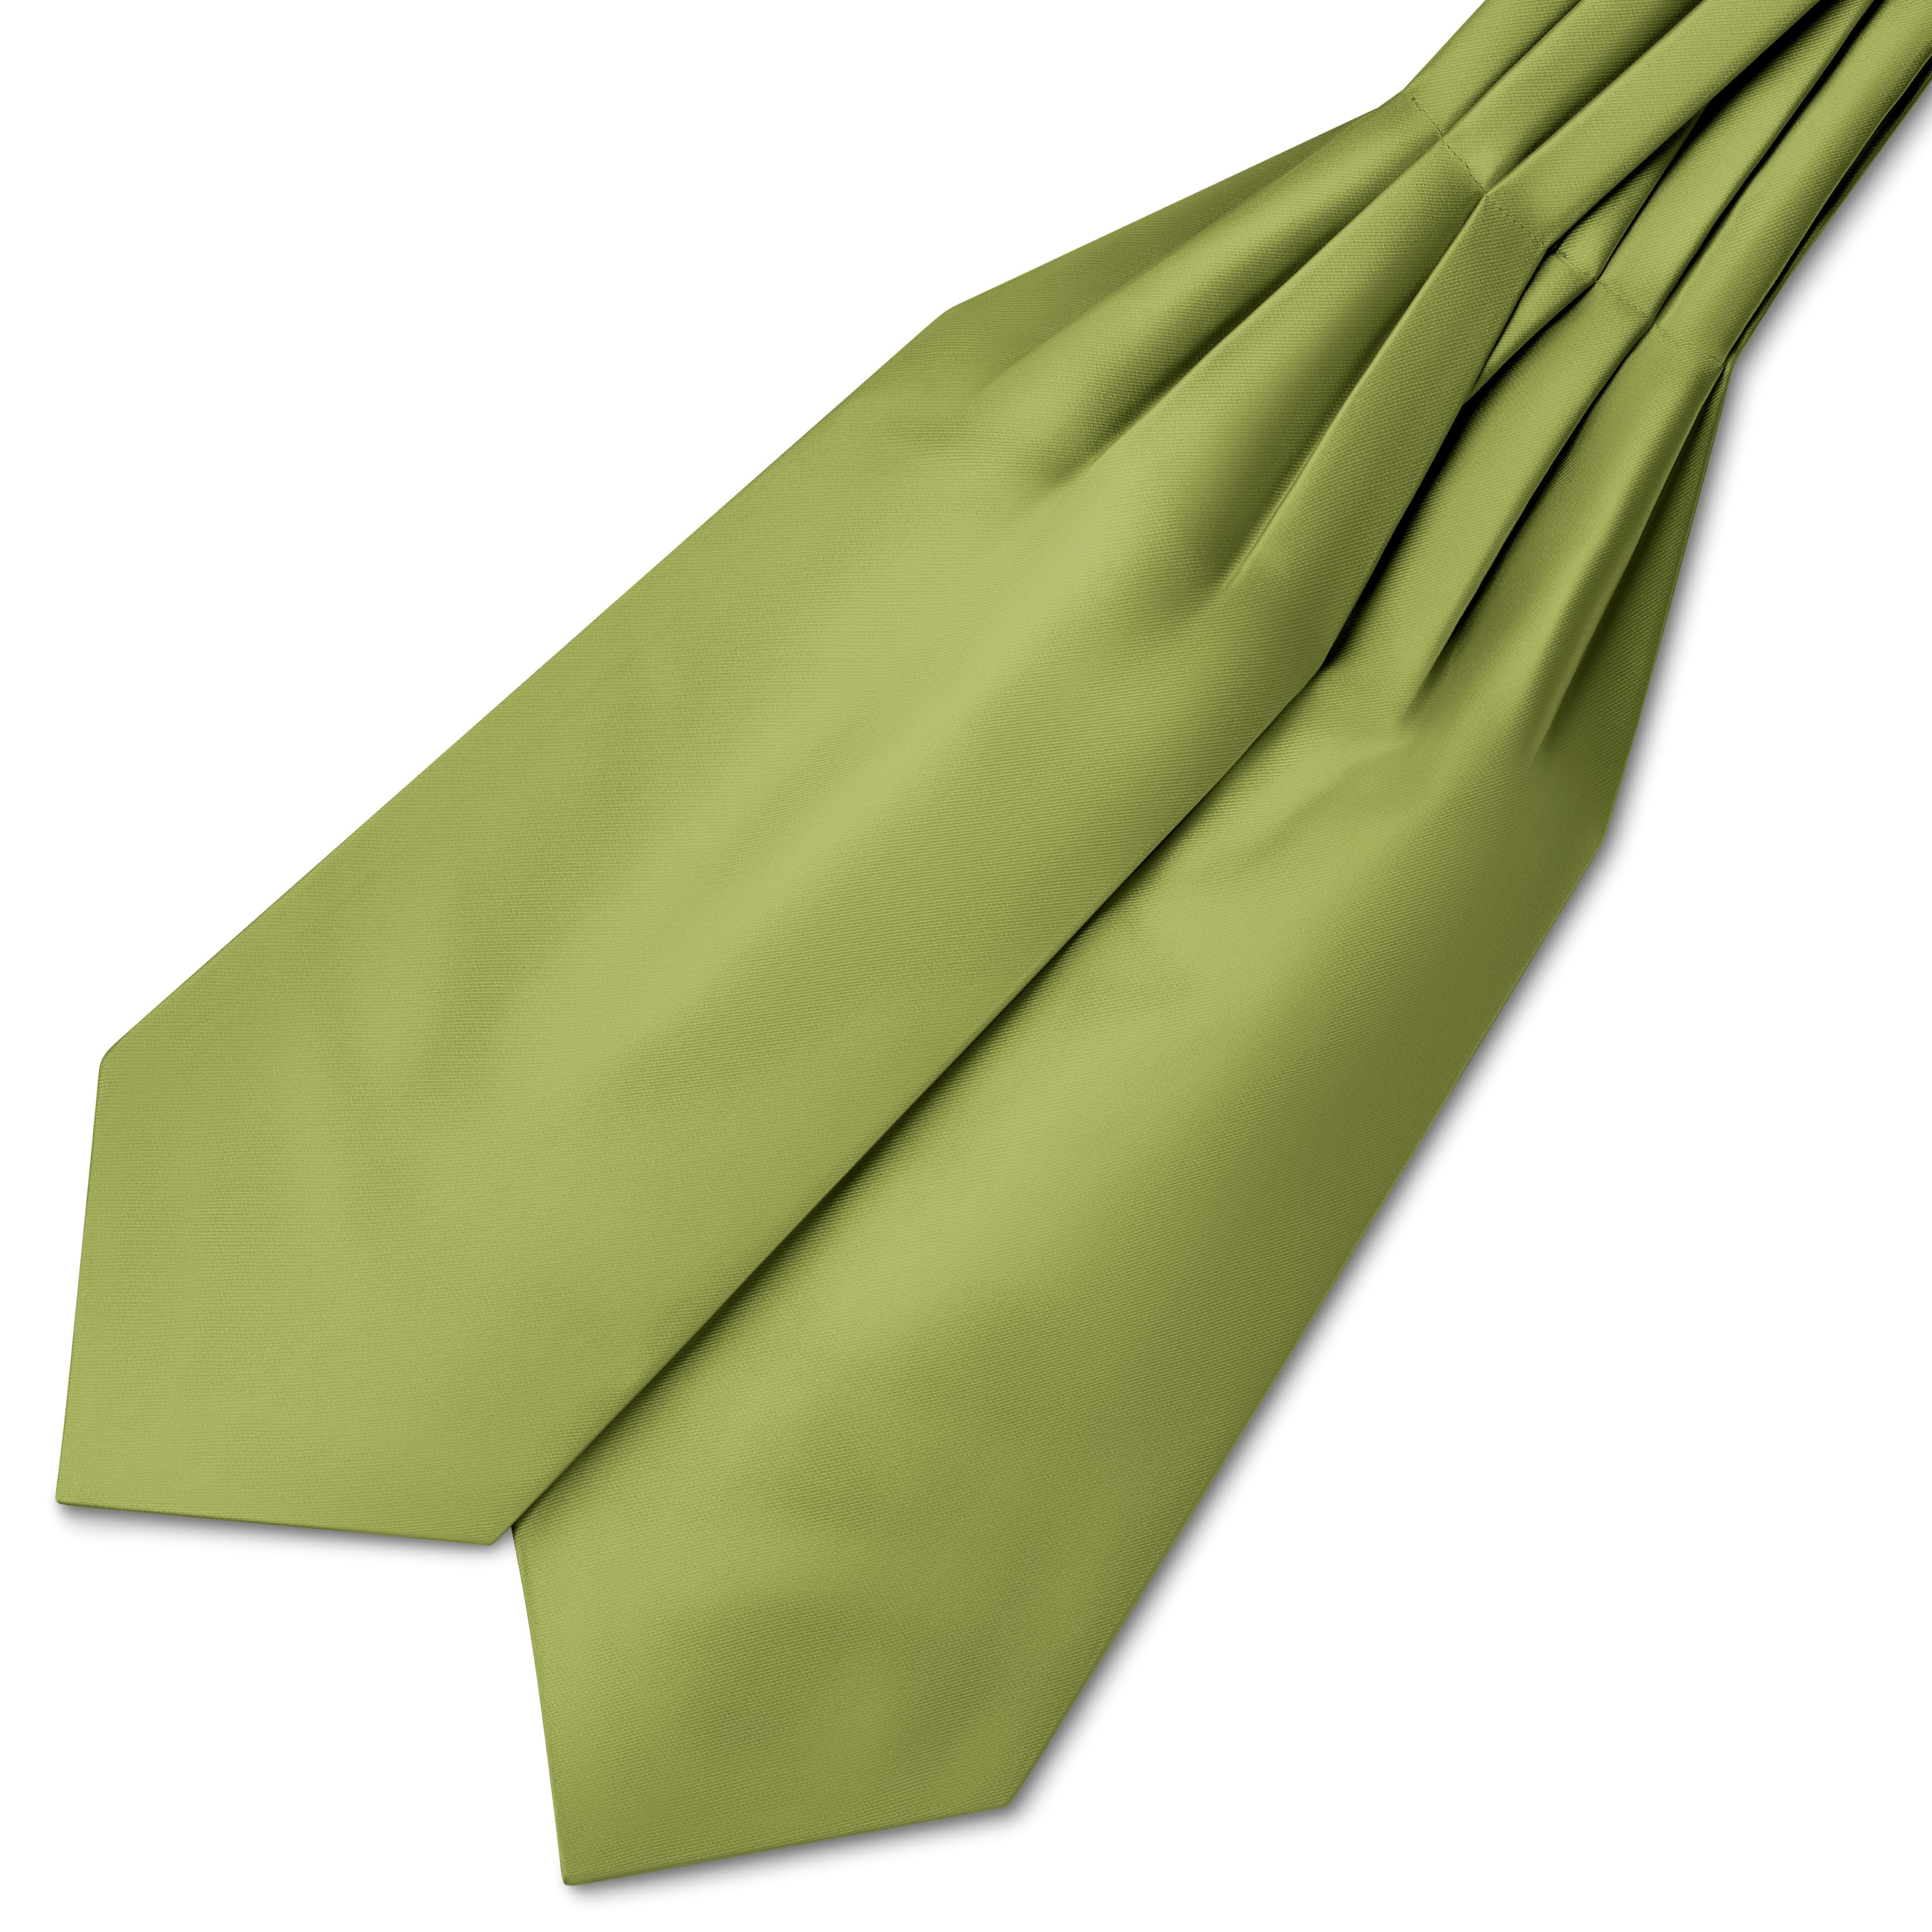 Saténová kravatová šála v barvě mořské zeleně